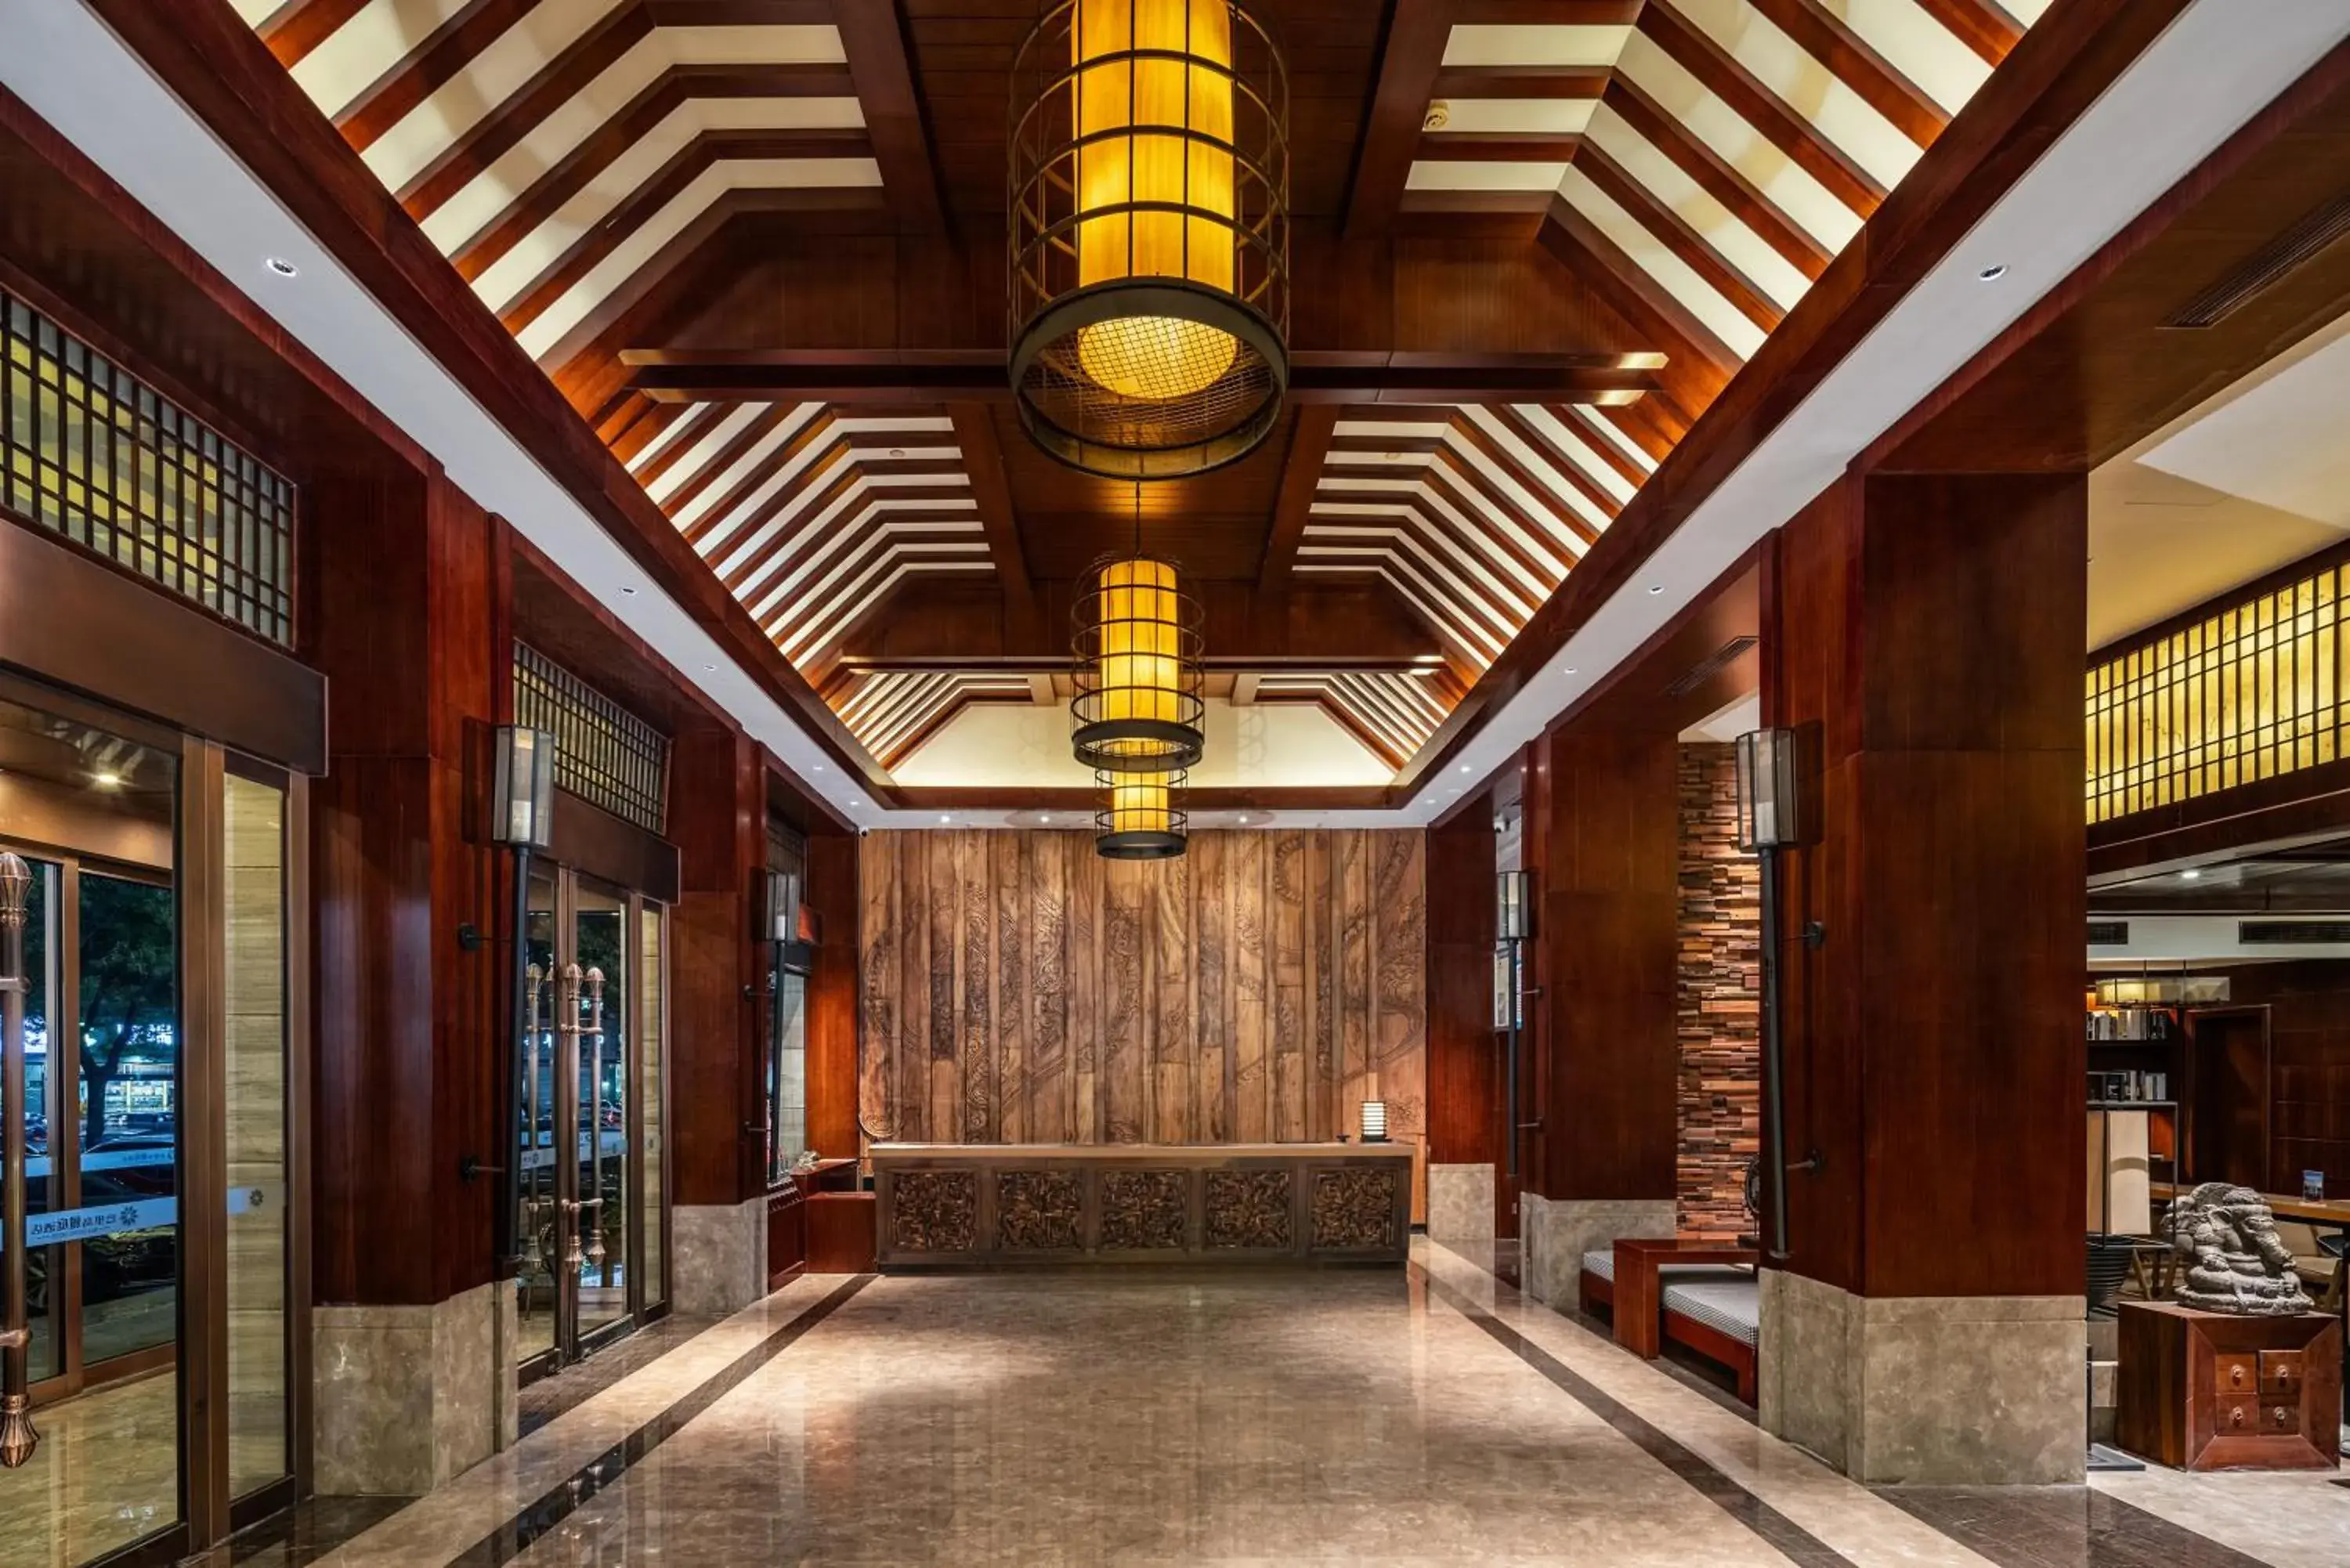 Lobby or reception, Lobby/Reception in Bali Yating Hotel